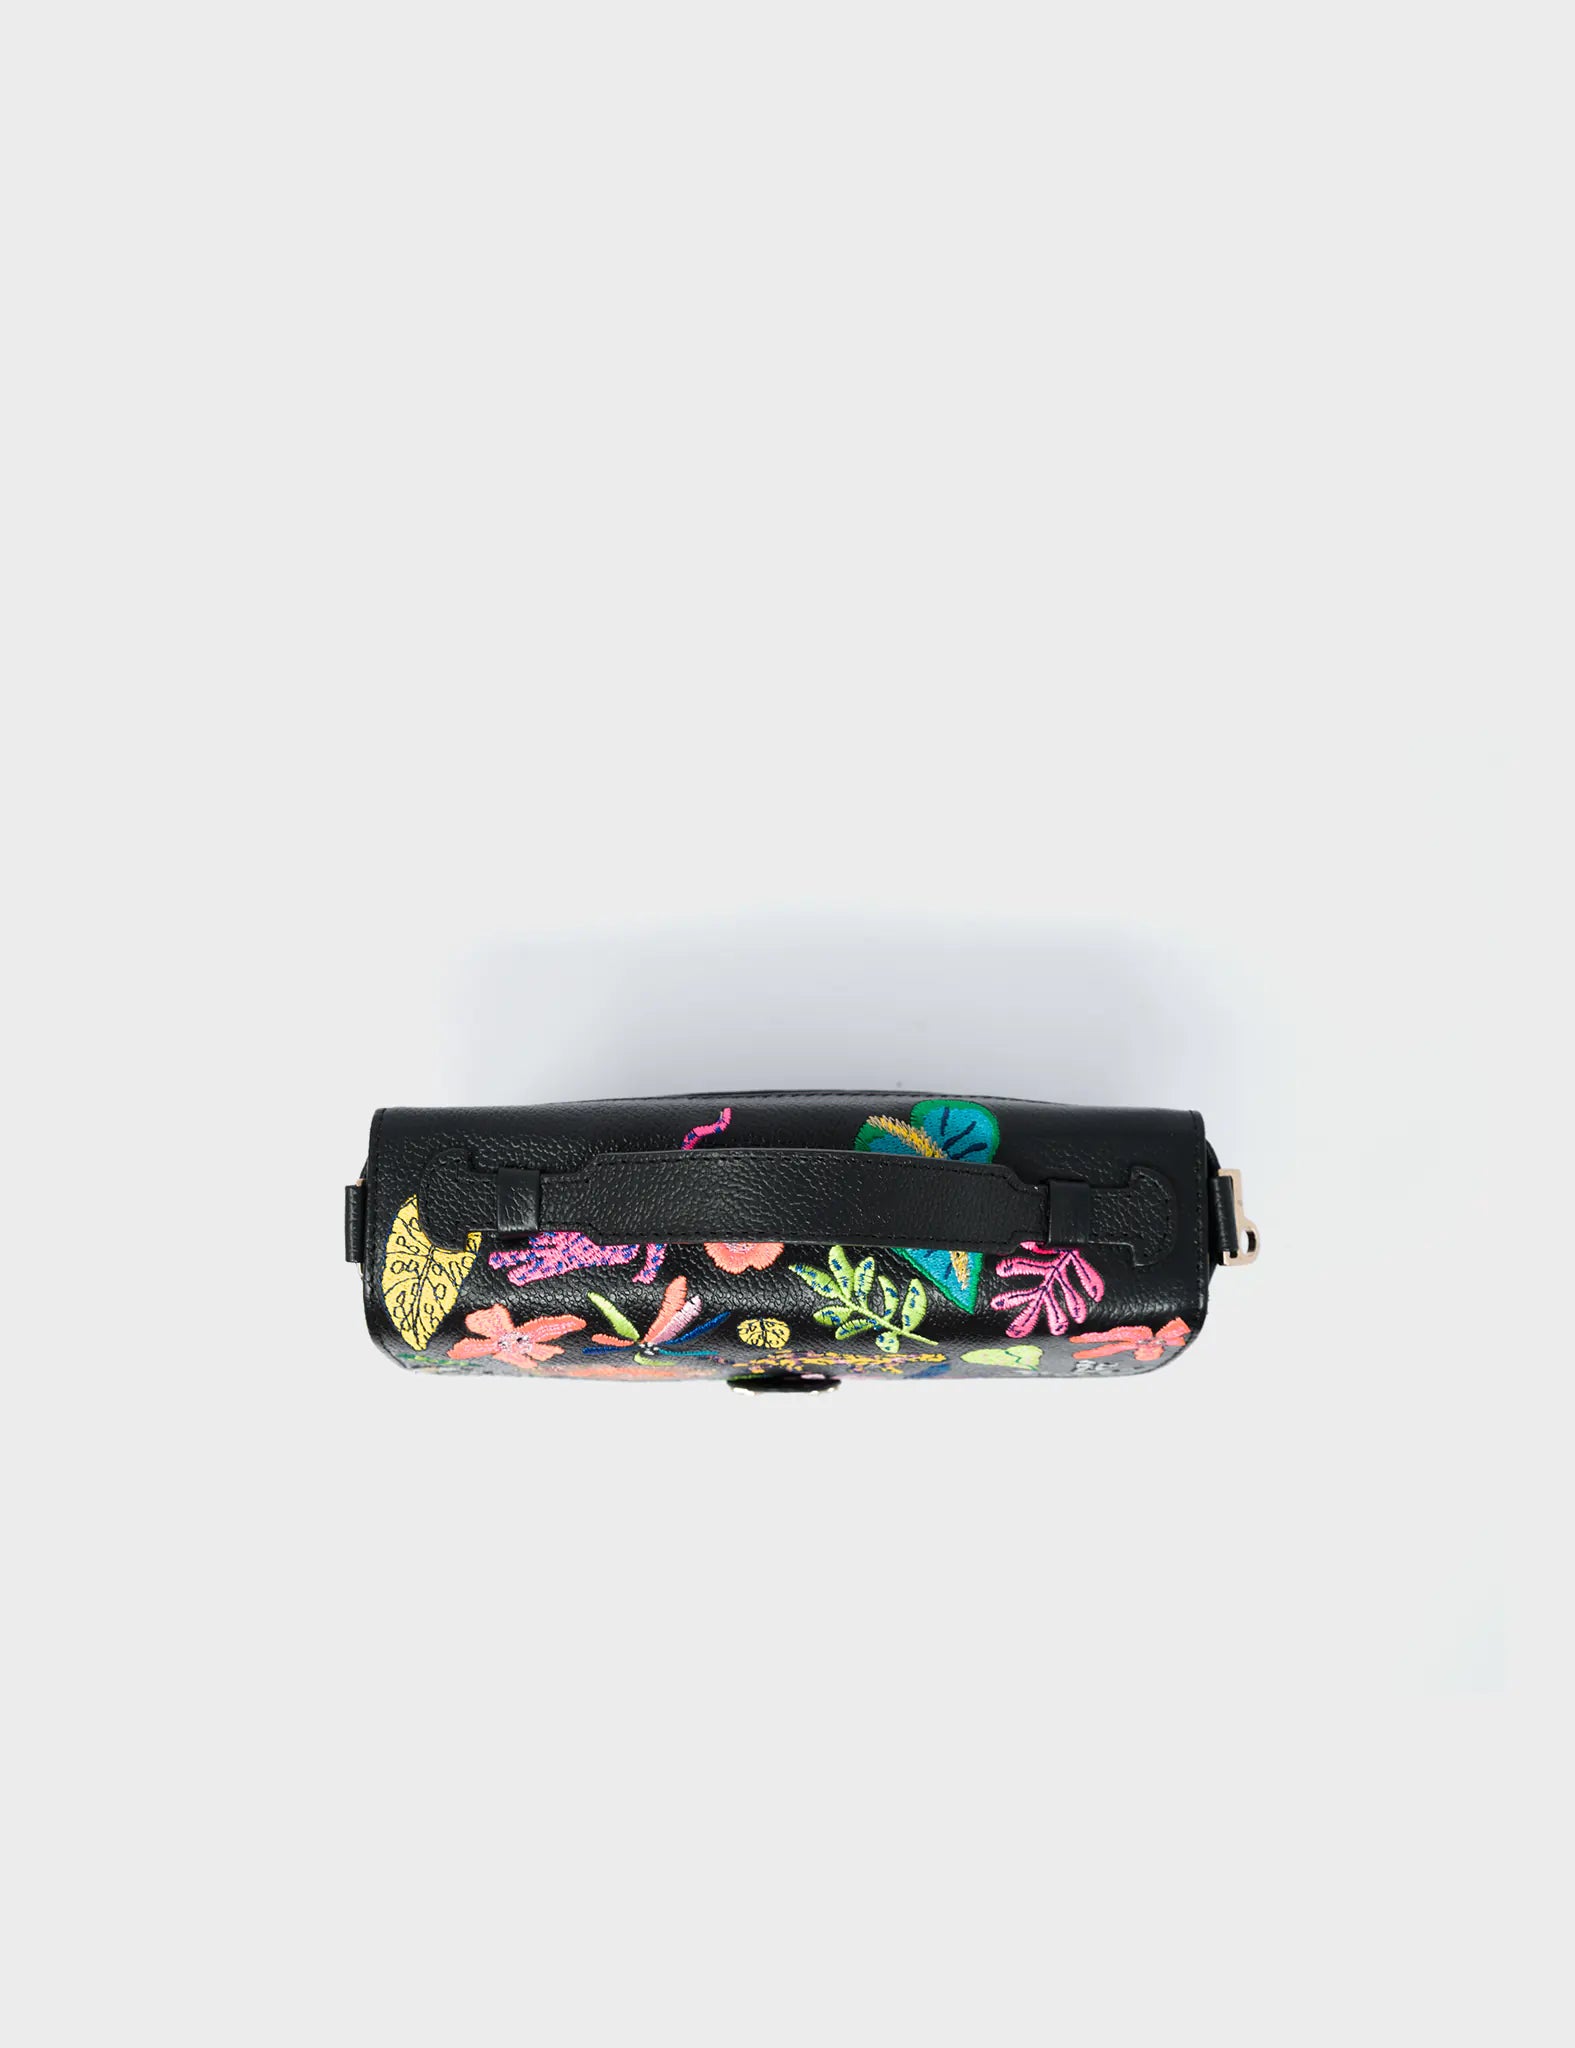 Amantis Cameo Black Leather Crossbody Mini Handbag - El Trópico Embroidery Design - Top 